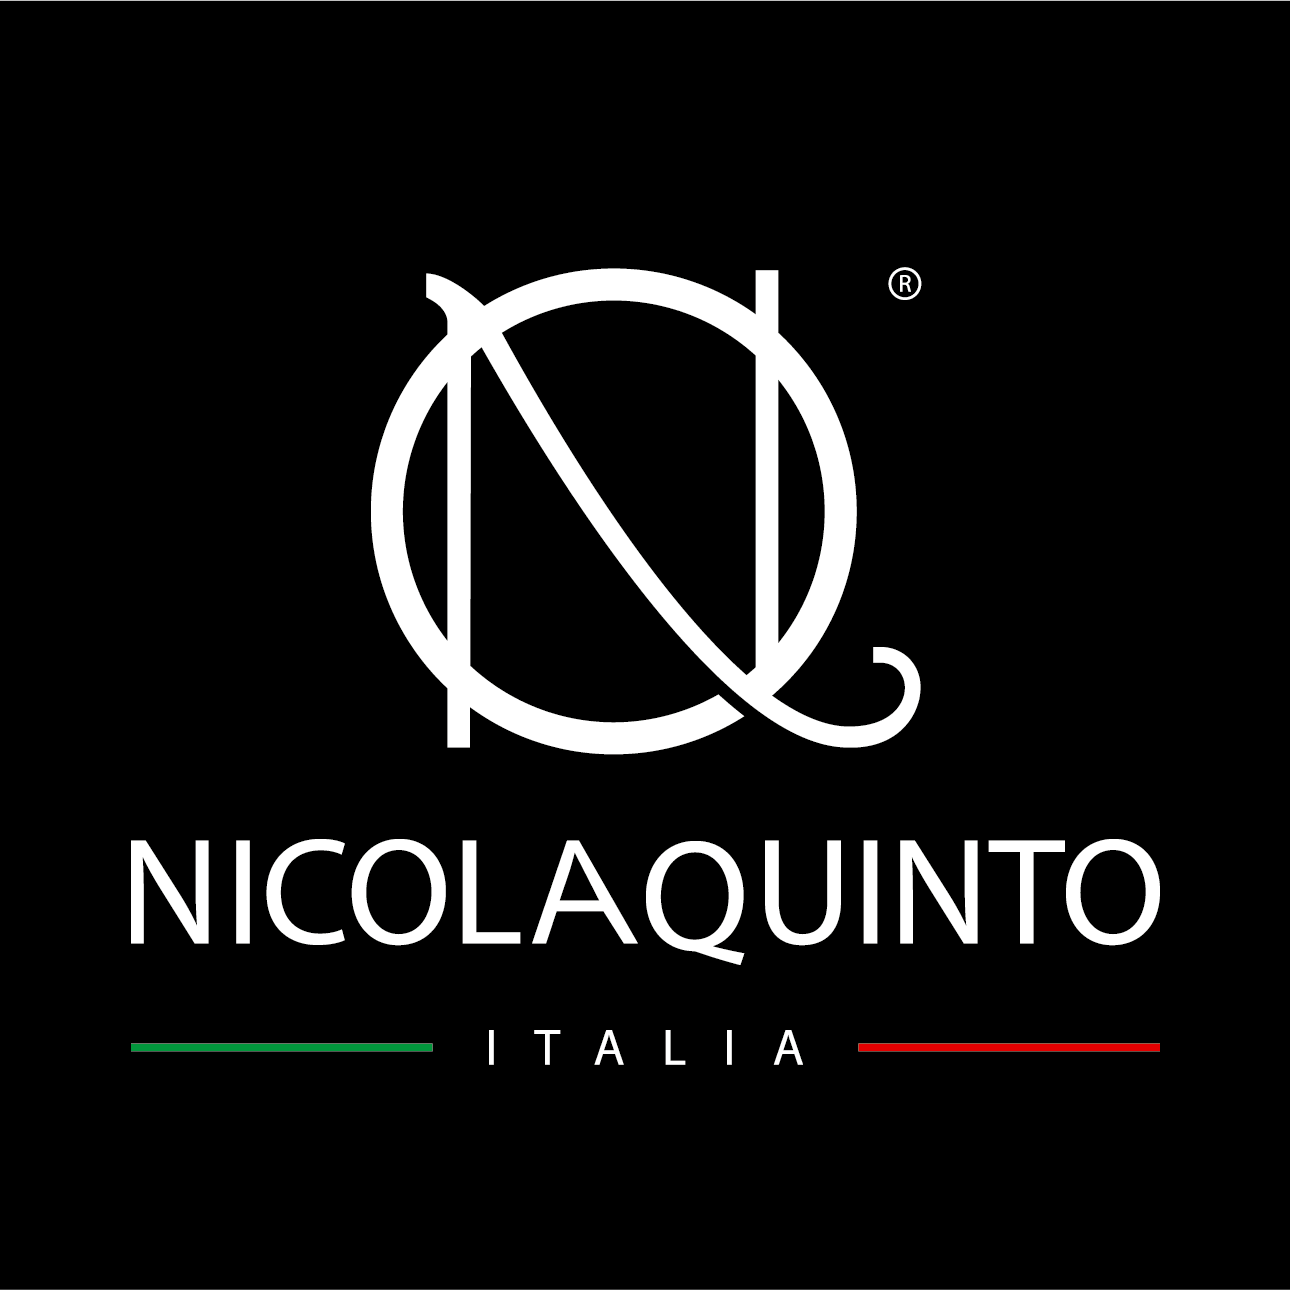 (c) Nicolaquinto.com